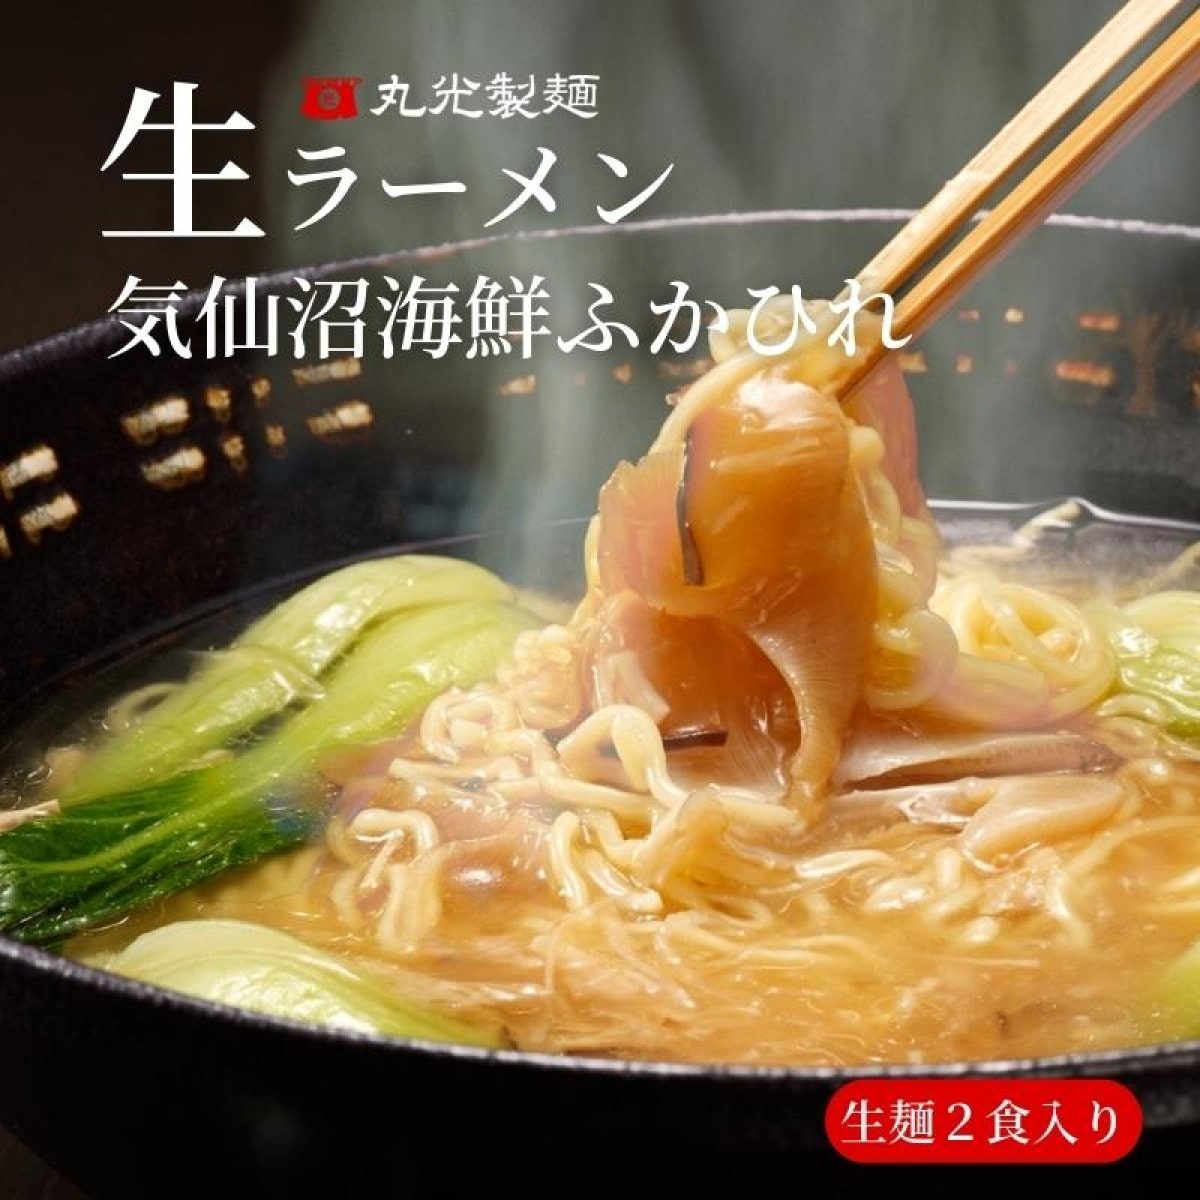 【生麺2食入】気仙沼海鮮ふかひれ生ラーメン〜ふかひれ餡と濃厚な魚介スープがからんだもちもちとした細麺